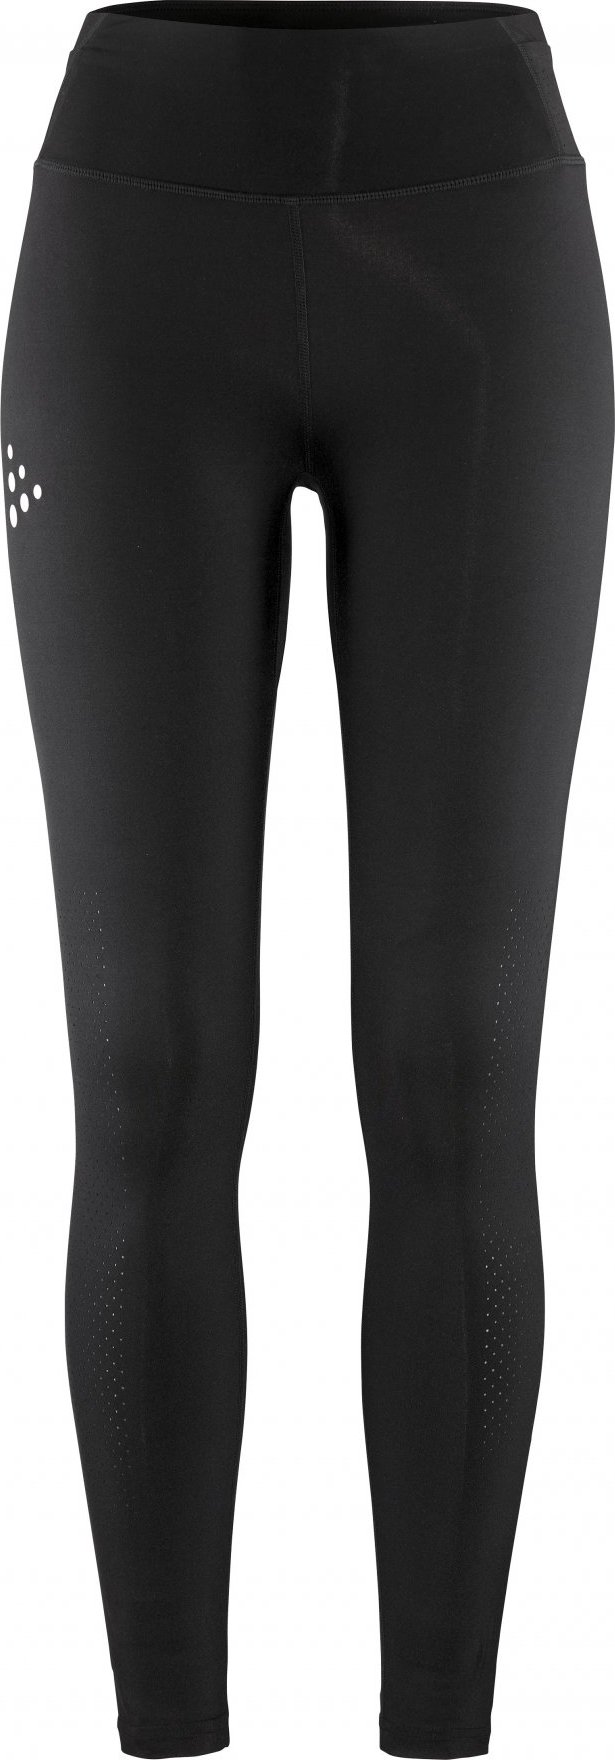 Dámské běžecké kalhoty CRAFT PRO Hypervent 2 - černá Velikost: S